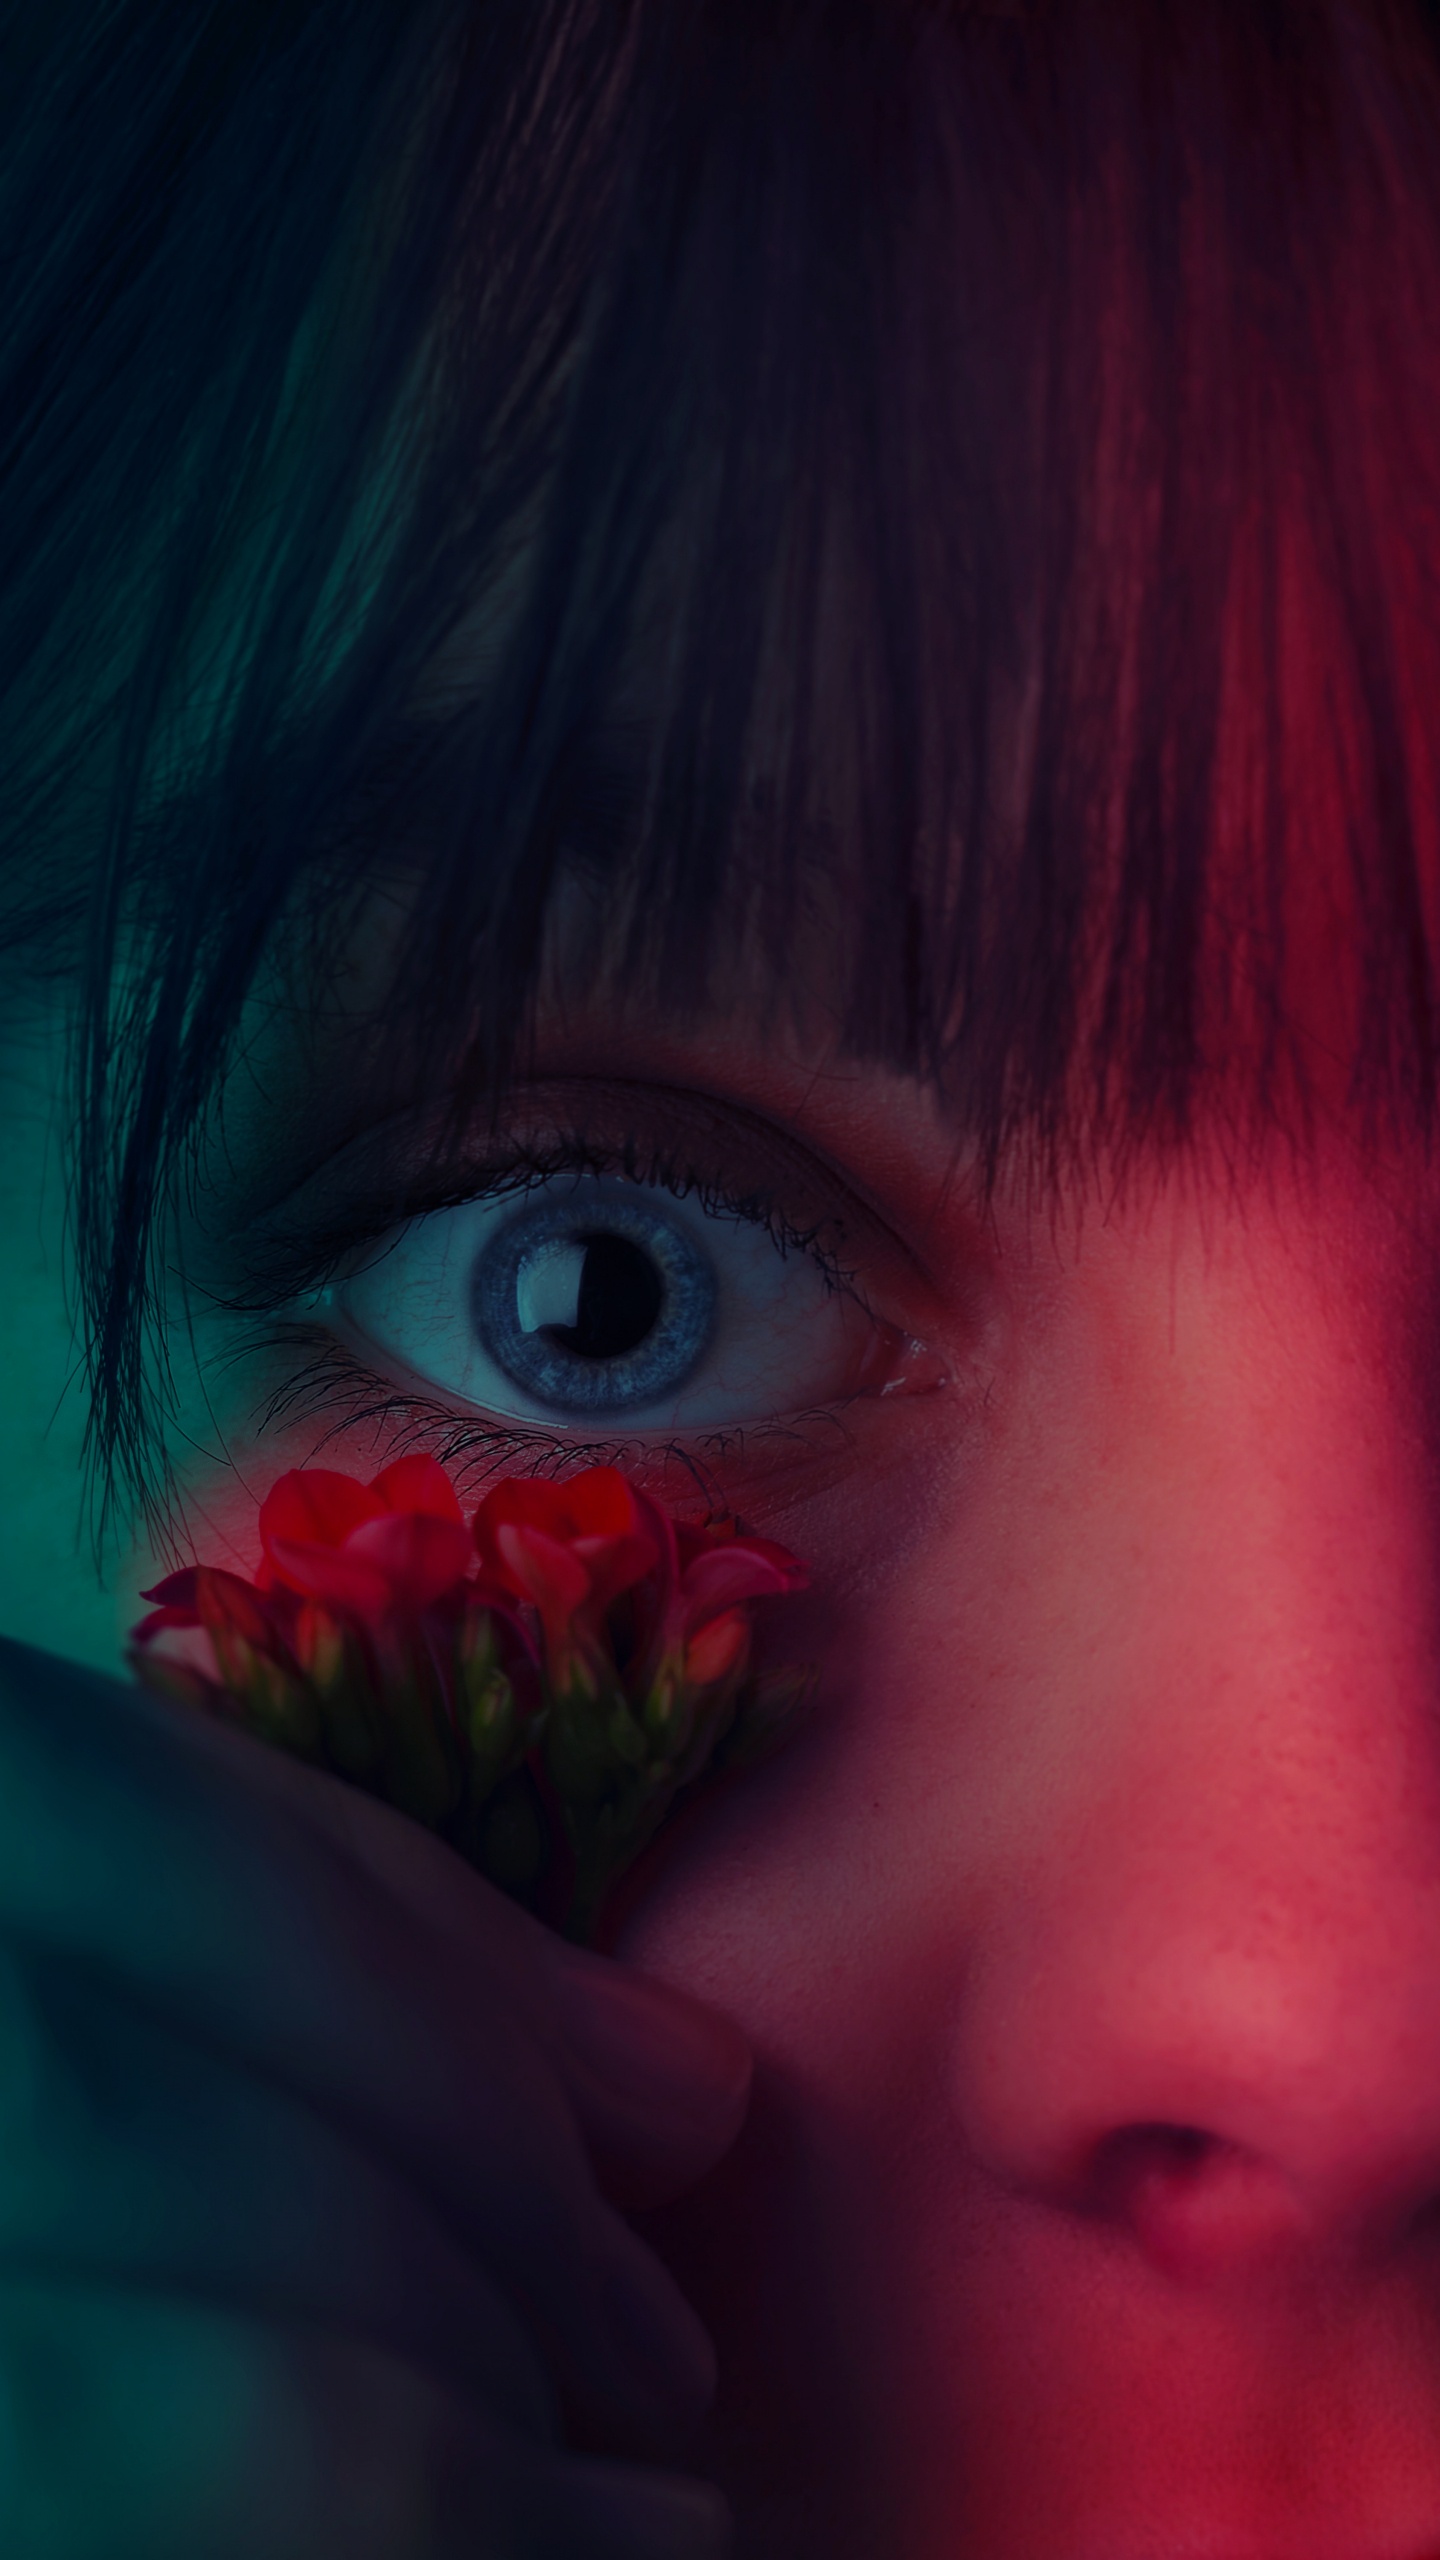 Mädchen Mit Roter Blume im Gesicht. Wallpaper in 1440x2560 Resolution